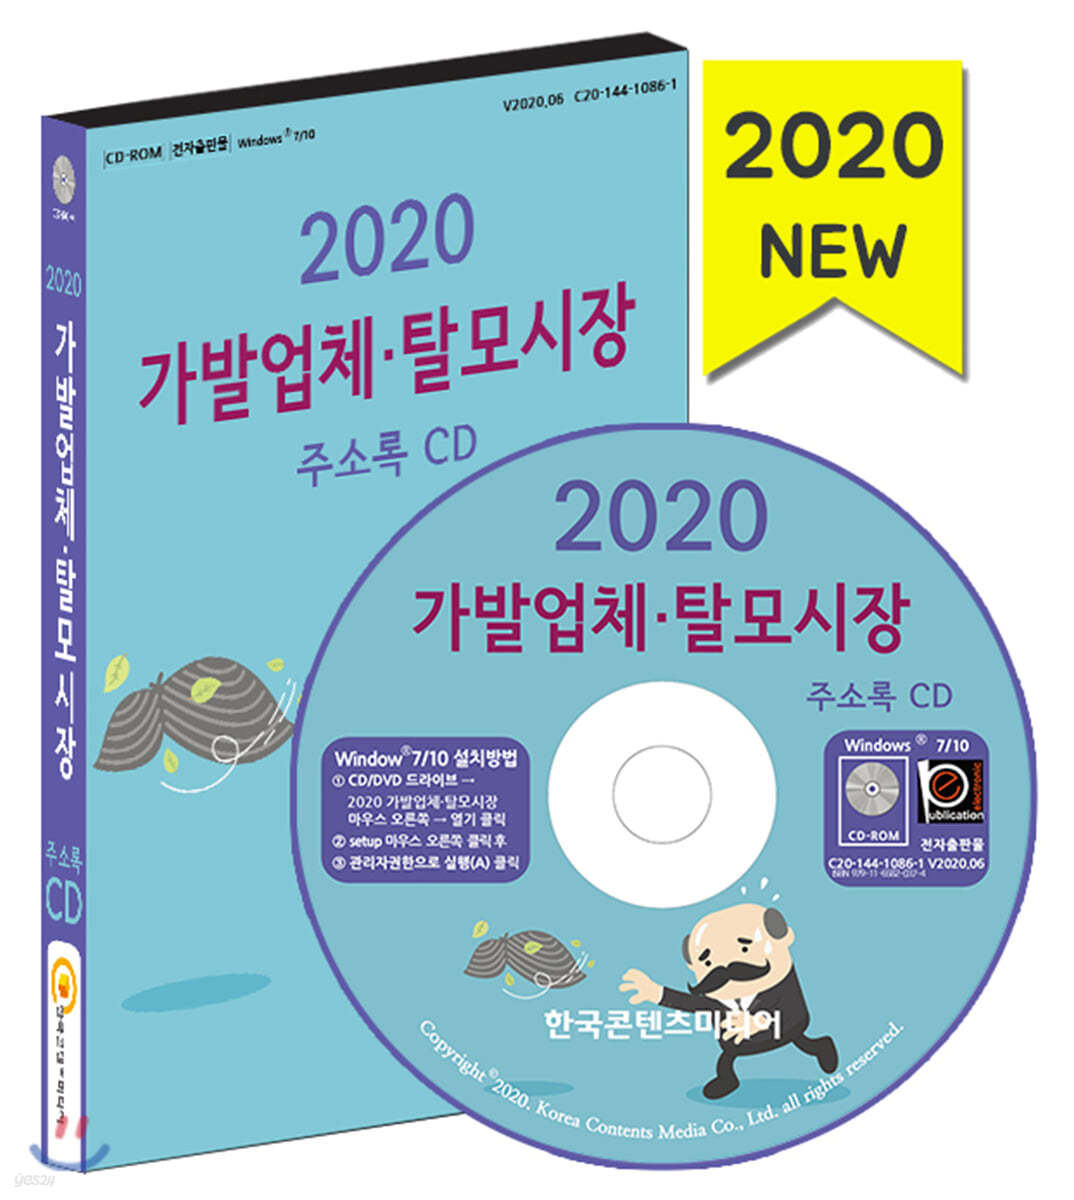 2020 가발업체·탈모시장 주소록 CD